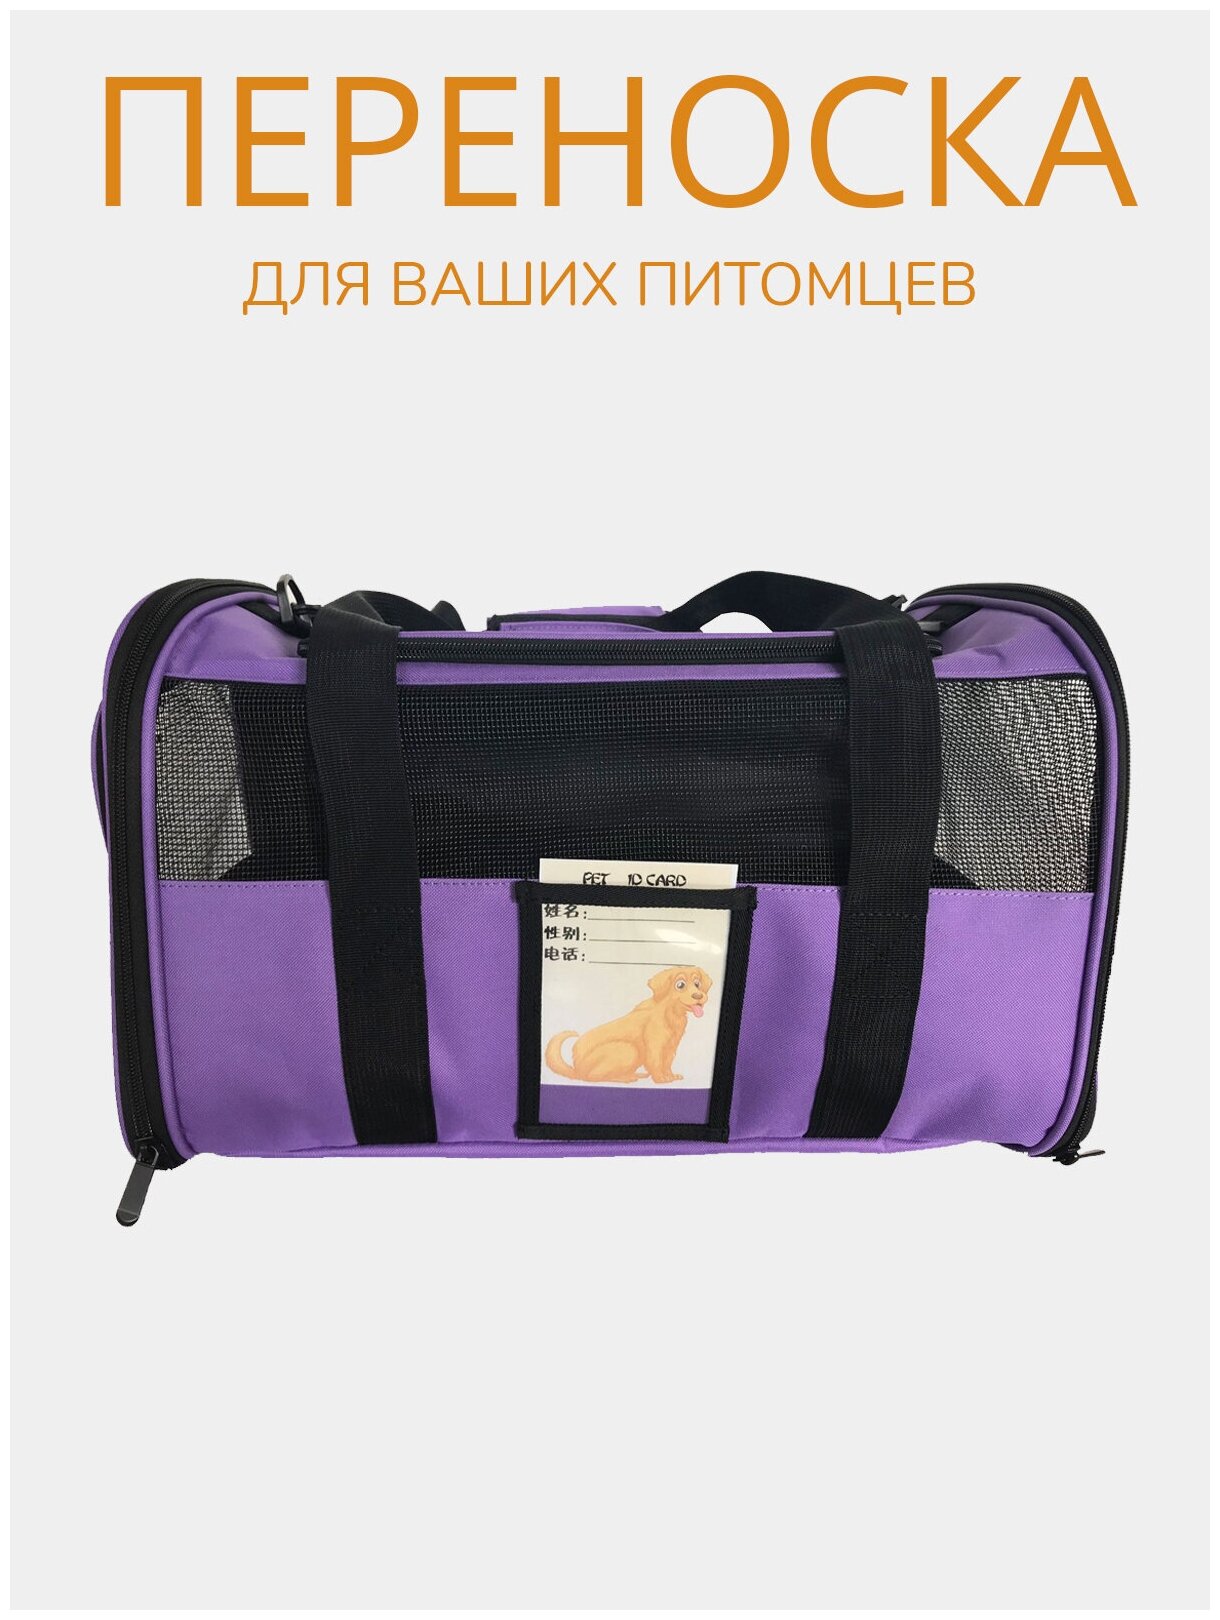 Переноска для животных ZES, сетчатая сумка для переноски кошек и собак мелких пород, размер 45х28х28, фиолетового цвета - фотография № 7